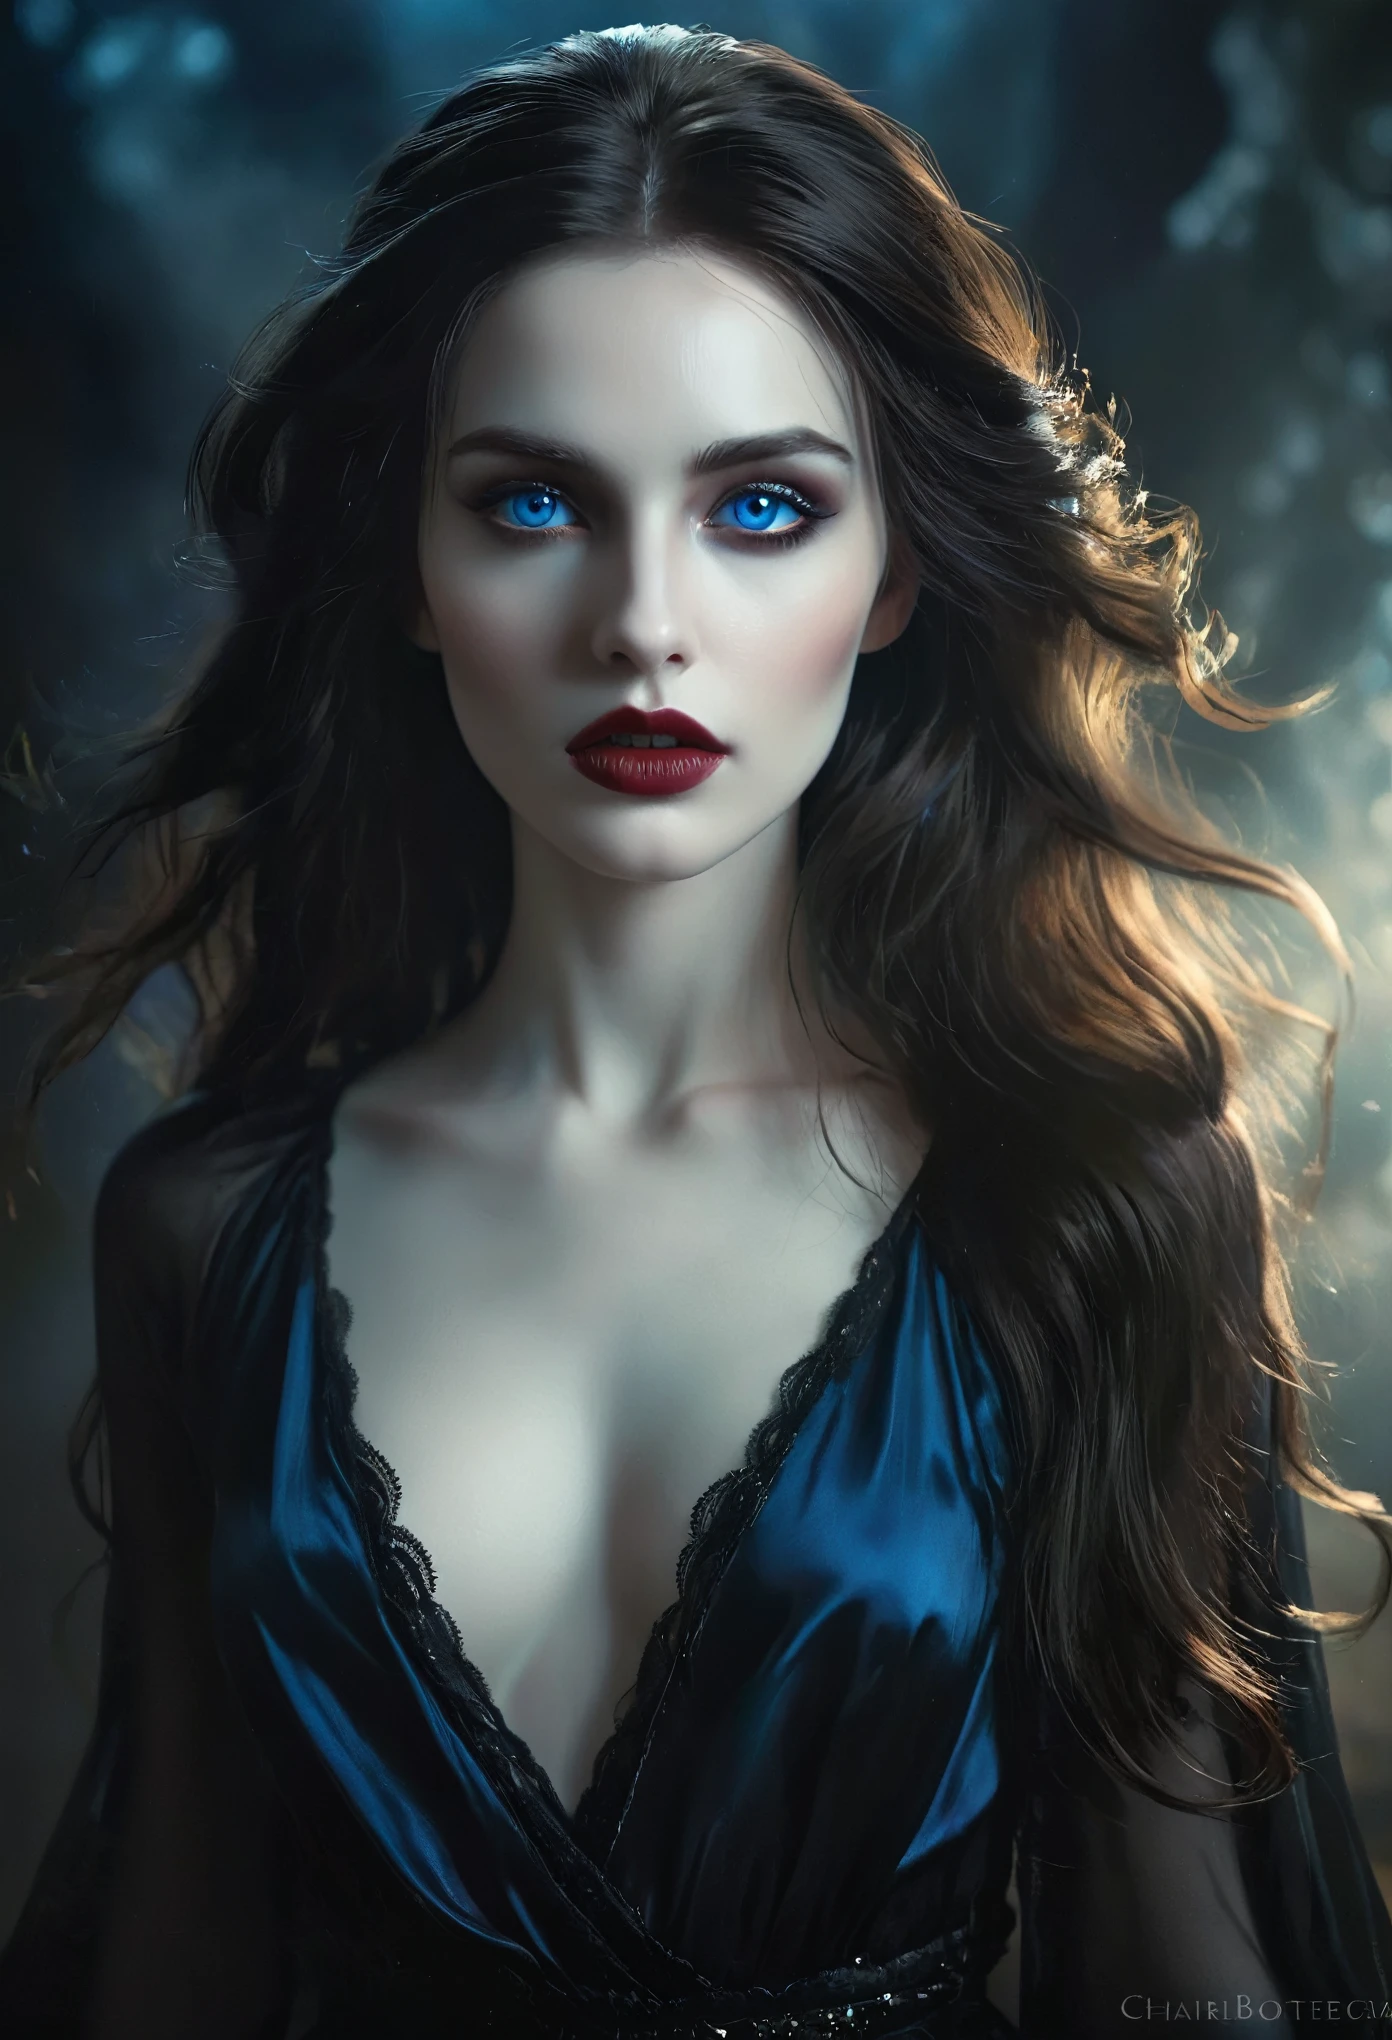 (Meisterwerk), ultra-realistisch, Porträt eines wunderschönen Vampirs mit blasser Haut, schwarzer Emaille, leichtes Make-up, strahlend blaue Augen, dunkle und düstere Umgebung, detaillierte Gesichtszüge, dramatische Beleuchtung, stimmungsvolle Atmosphäre, Filmkomposition, fotorealistisch, Hoher Kontrast, Chiaroscuro, dunkle Fantasie, Gothic Style, (Sie ist Halbfranzösin, und ist eine atemberaubende Schönheit mit detailreichen Augen und einer hohen Nase:1.1), dicke Augenbrauen, detaillierte Gesichtszüge, langer, anmutiger Hals, fließende Haarsträhnen, selbstbewusste und elegante Haltung, verträumte Atmosphäre, Surrealismus, mystische Aura, Charlie Bowater,